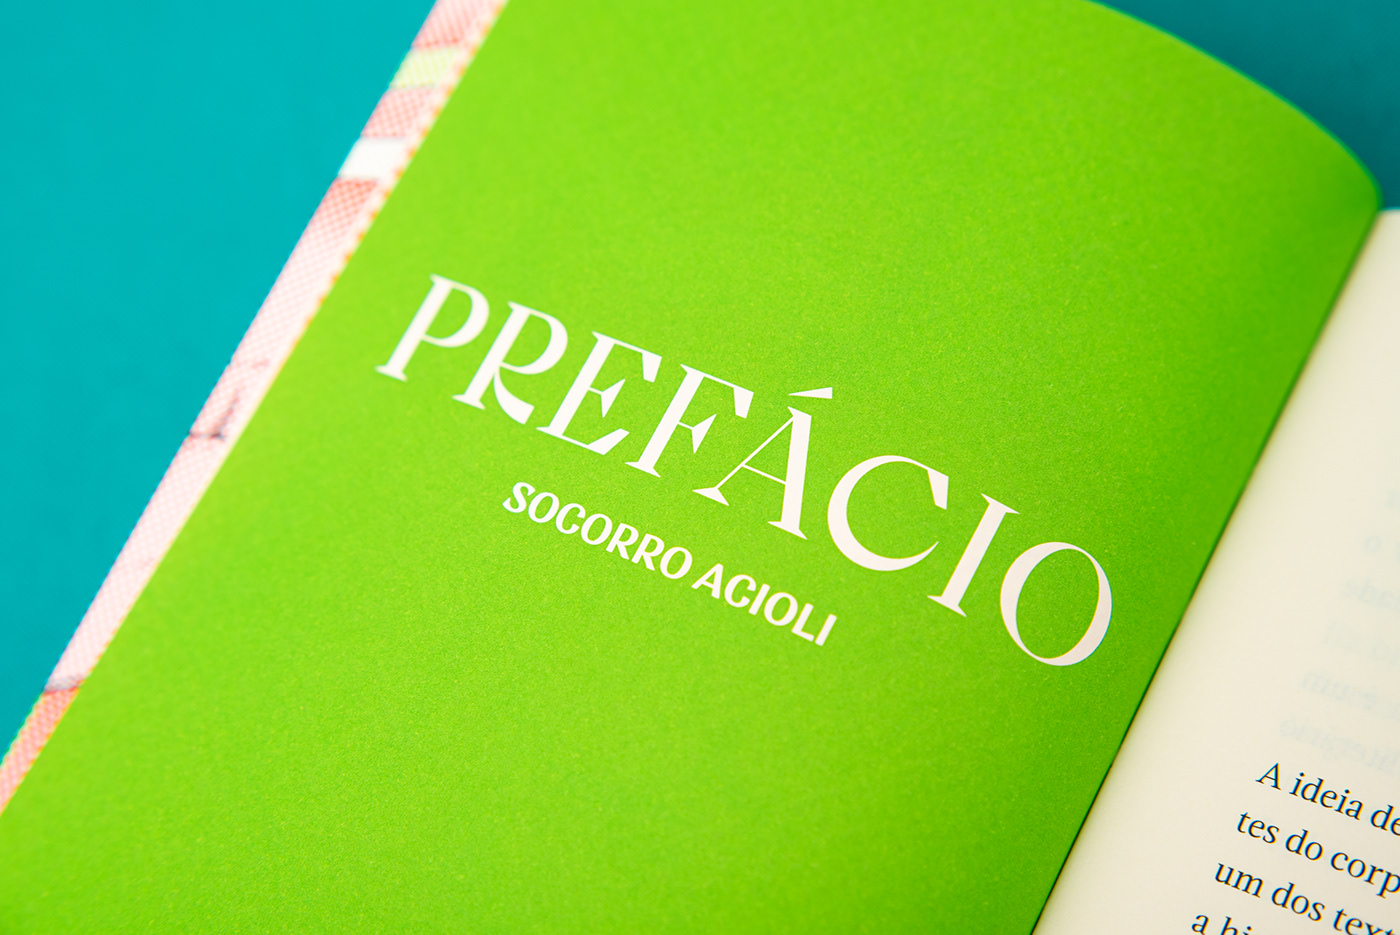 book book cover capa de livro editorial she designs books covers halftone Livro pantone colorful